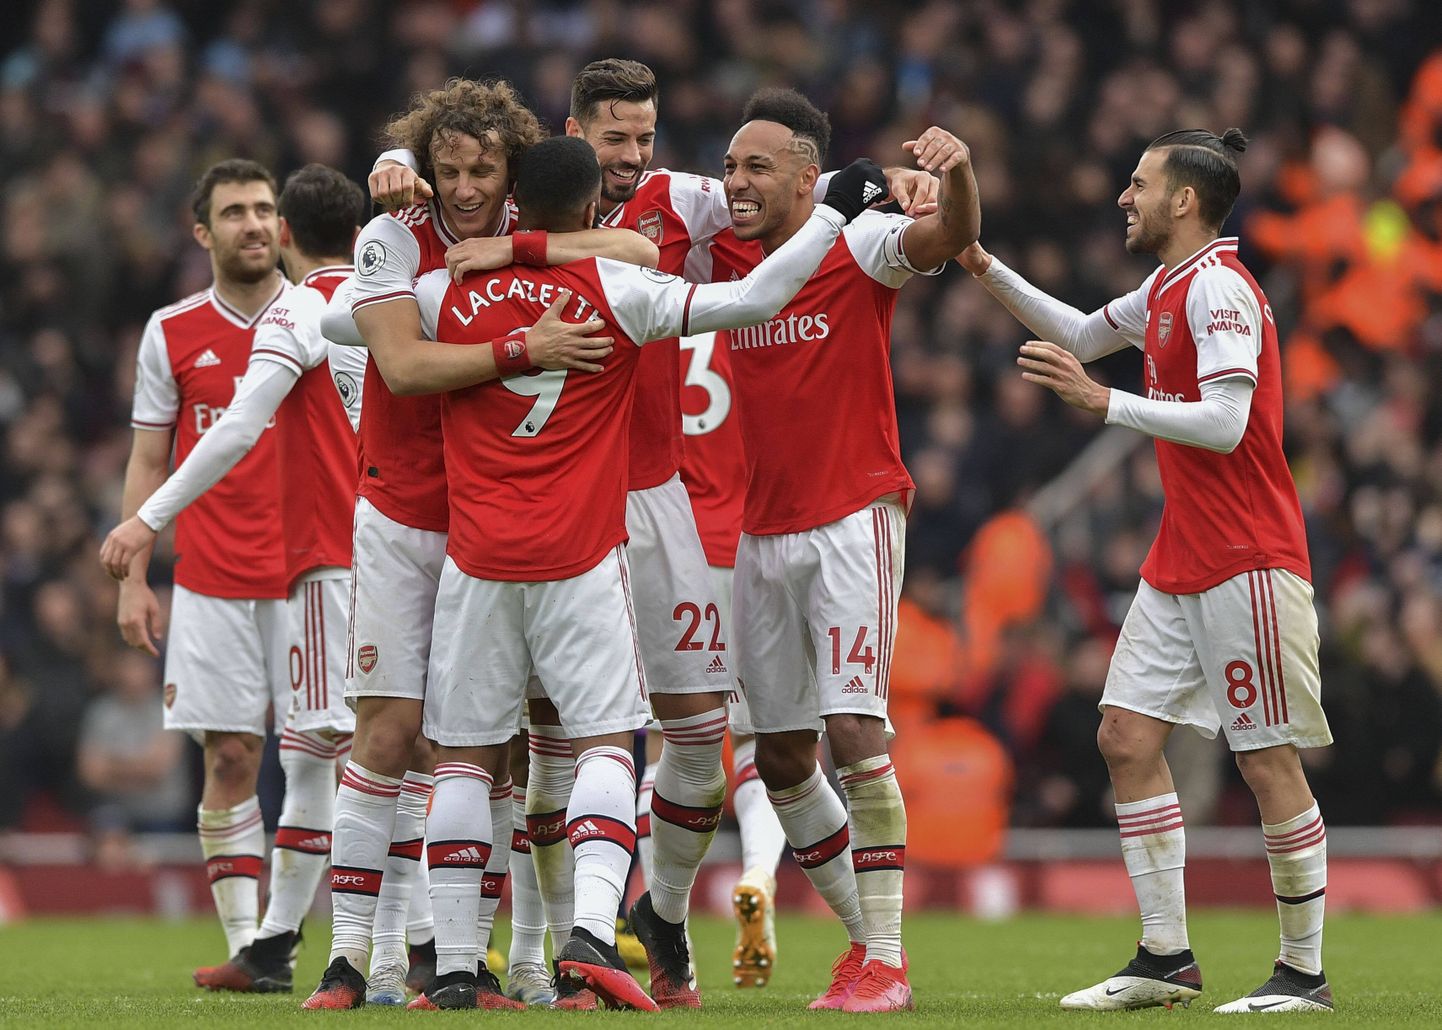 Arsenali mängijad väravat tähistamas.